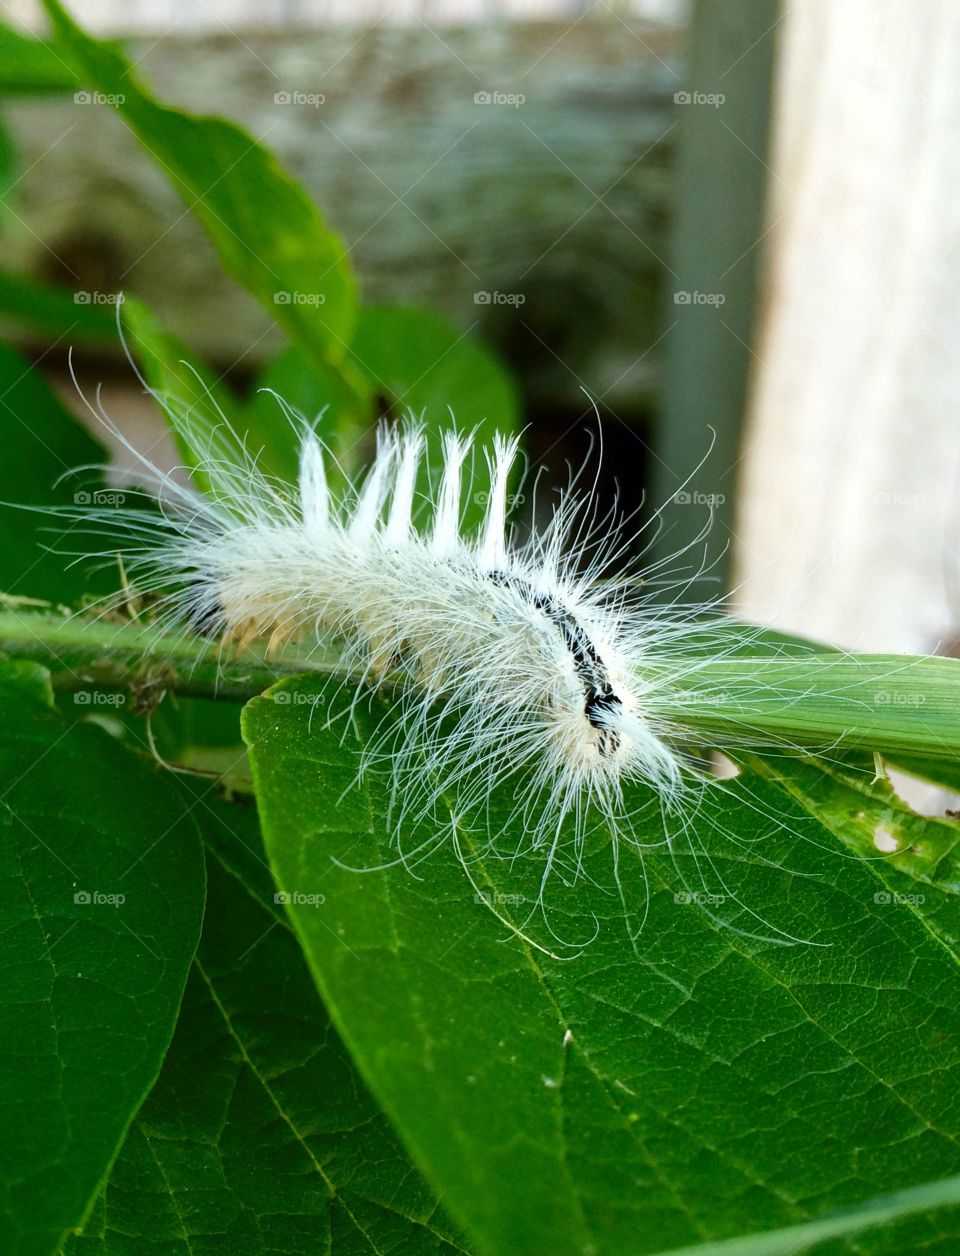 Fuzzypillar . Fuzzy white caterpillar with white tufts of hair